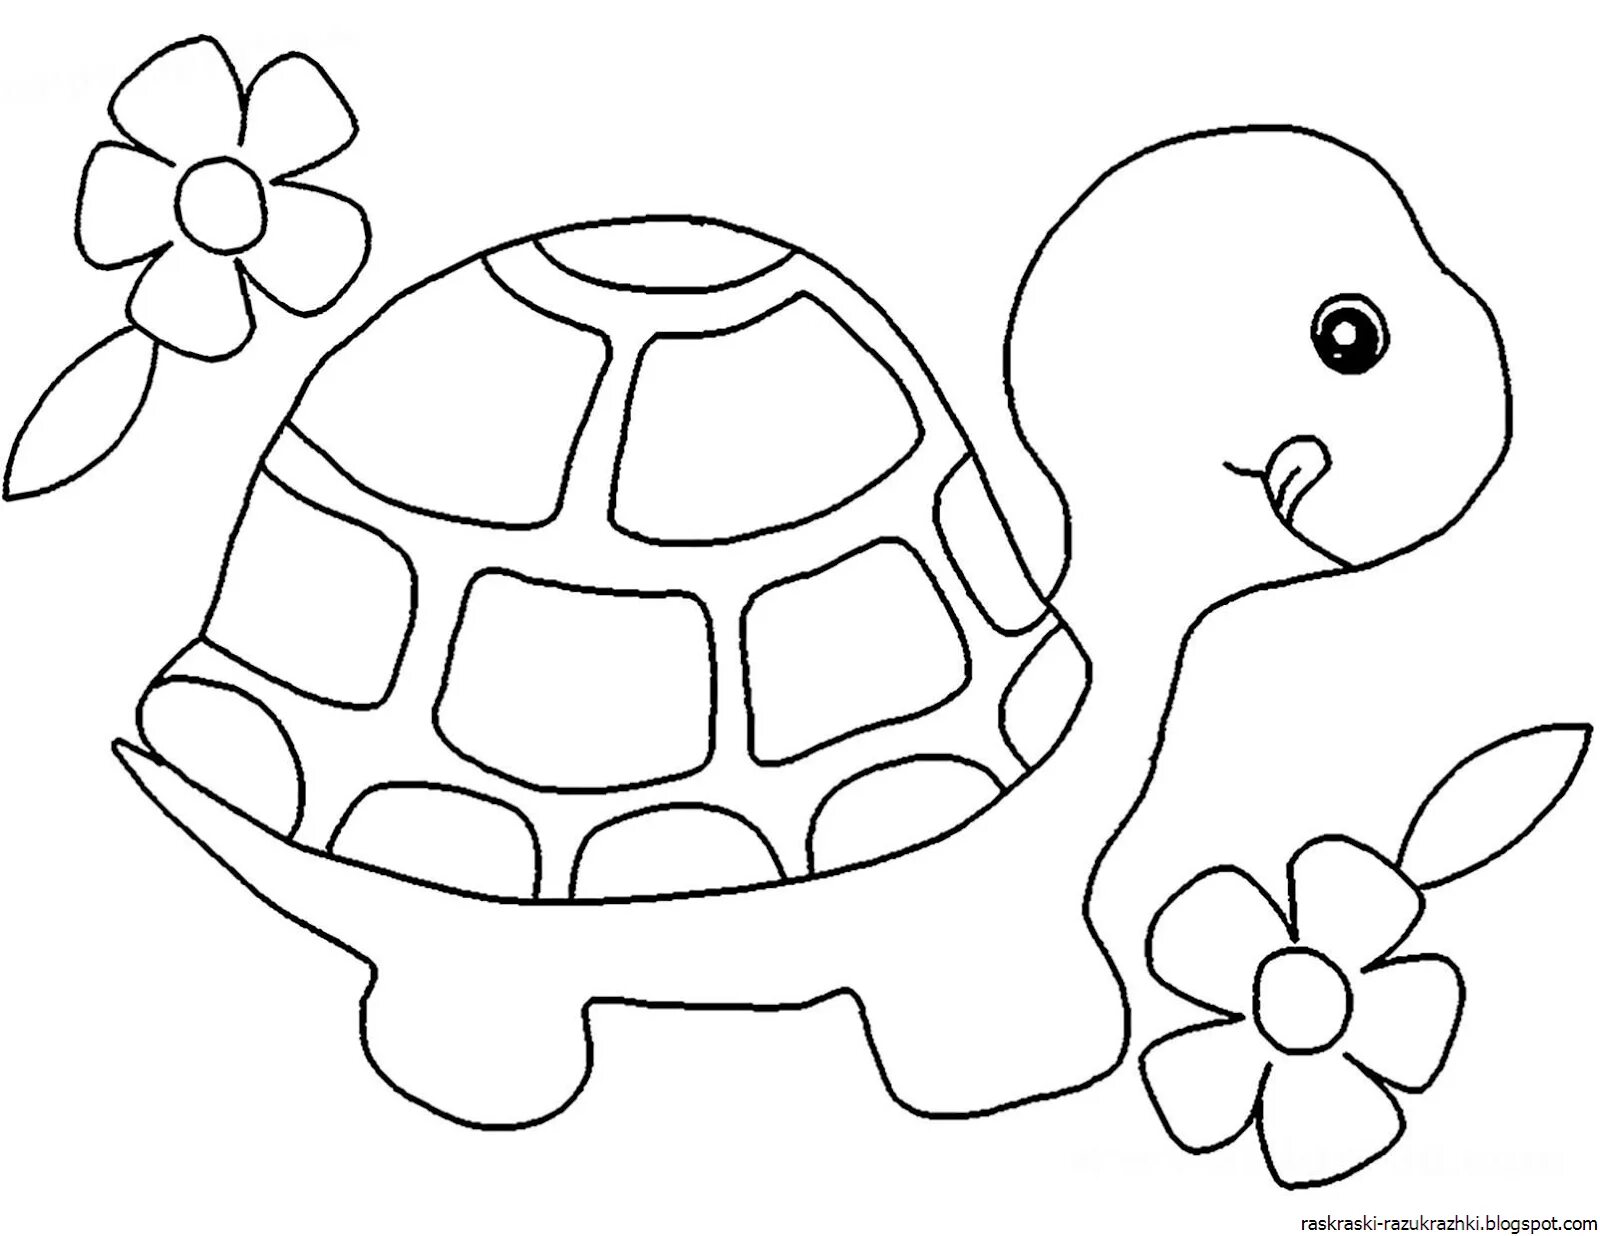 Учимся рисовать черепаху — урок для детей